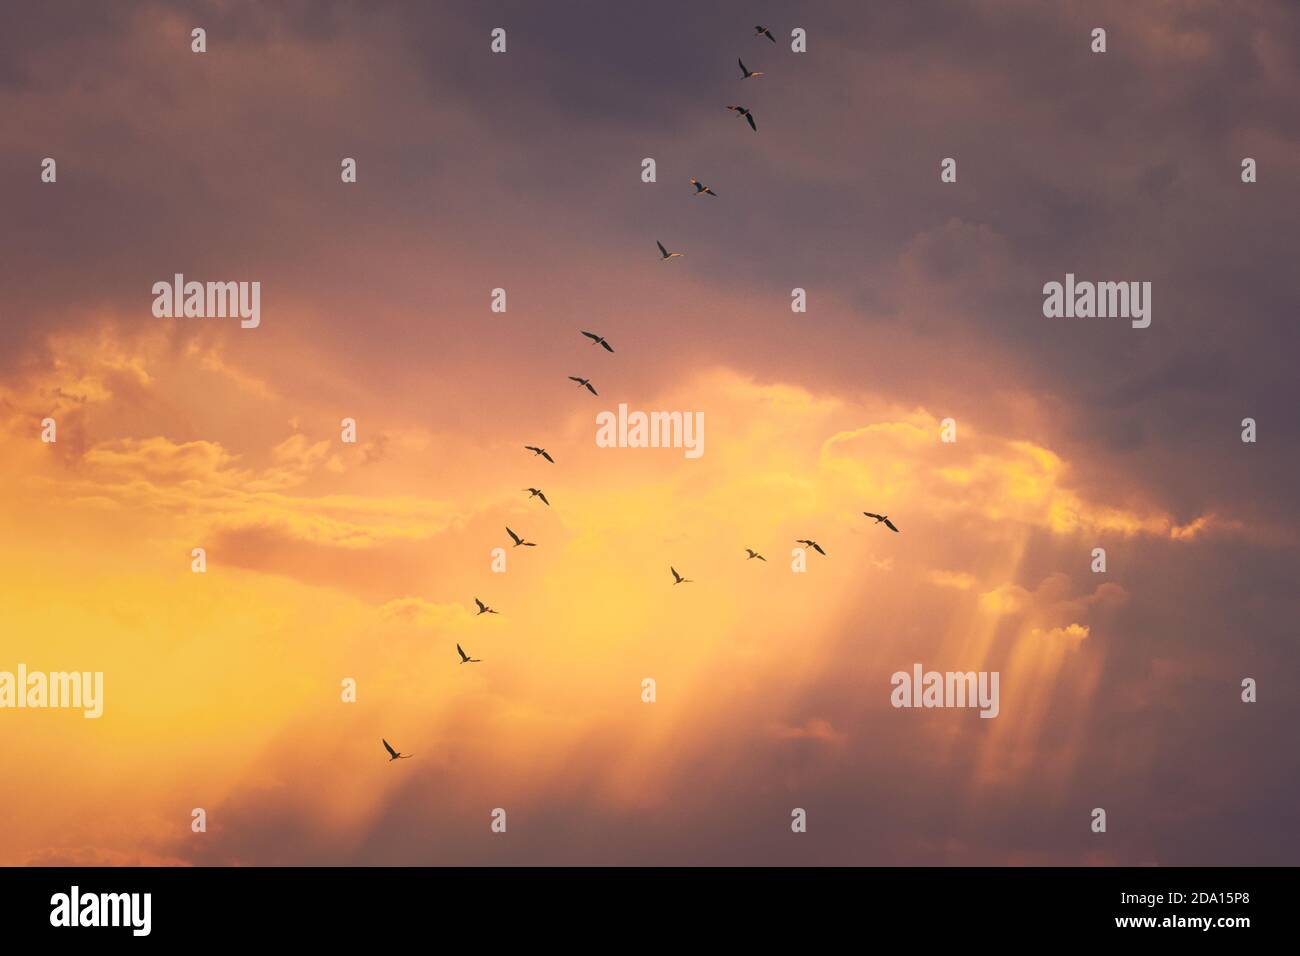 Schwarm Von Enten Fliegen In Sonnigen Sonnenuntergang Herbst Frühling Himmel Während Ihrer Migration. Veränderter Himmel Bei Sonnenaufgang Stockfoto